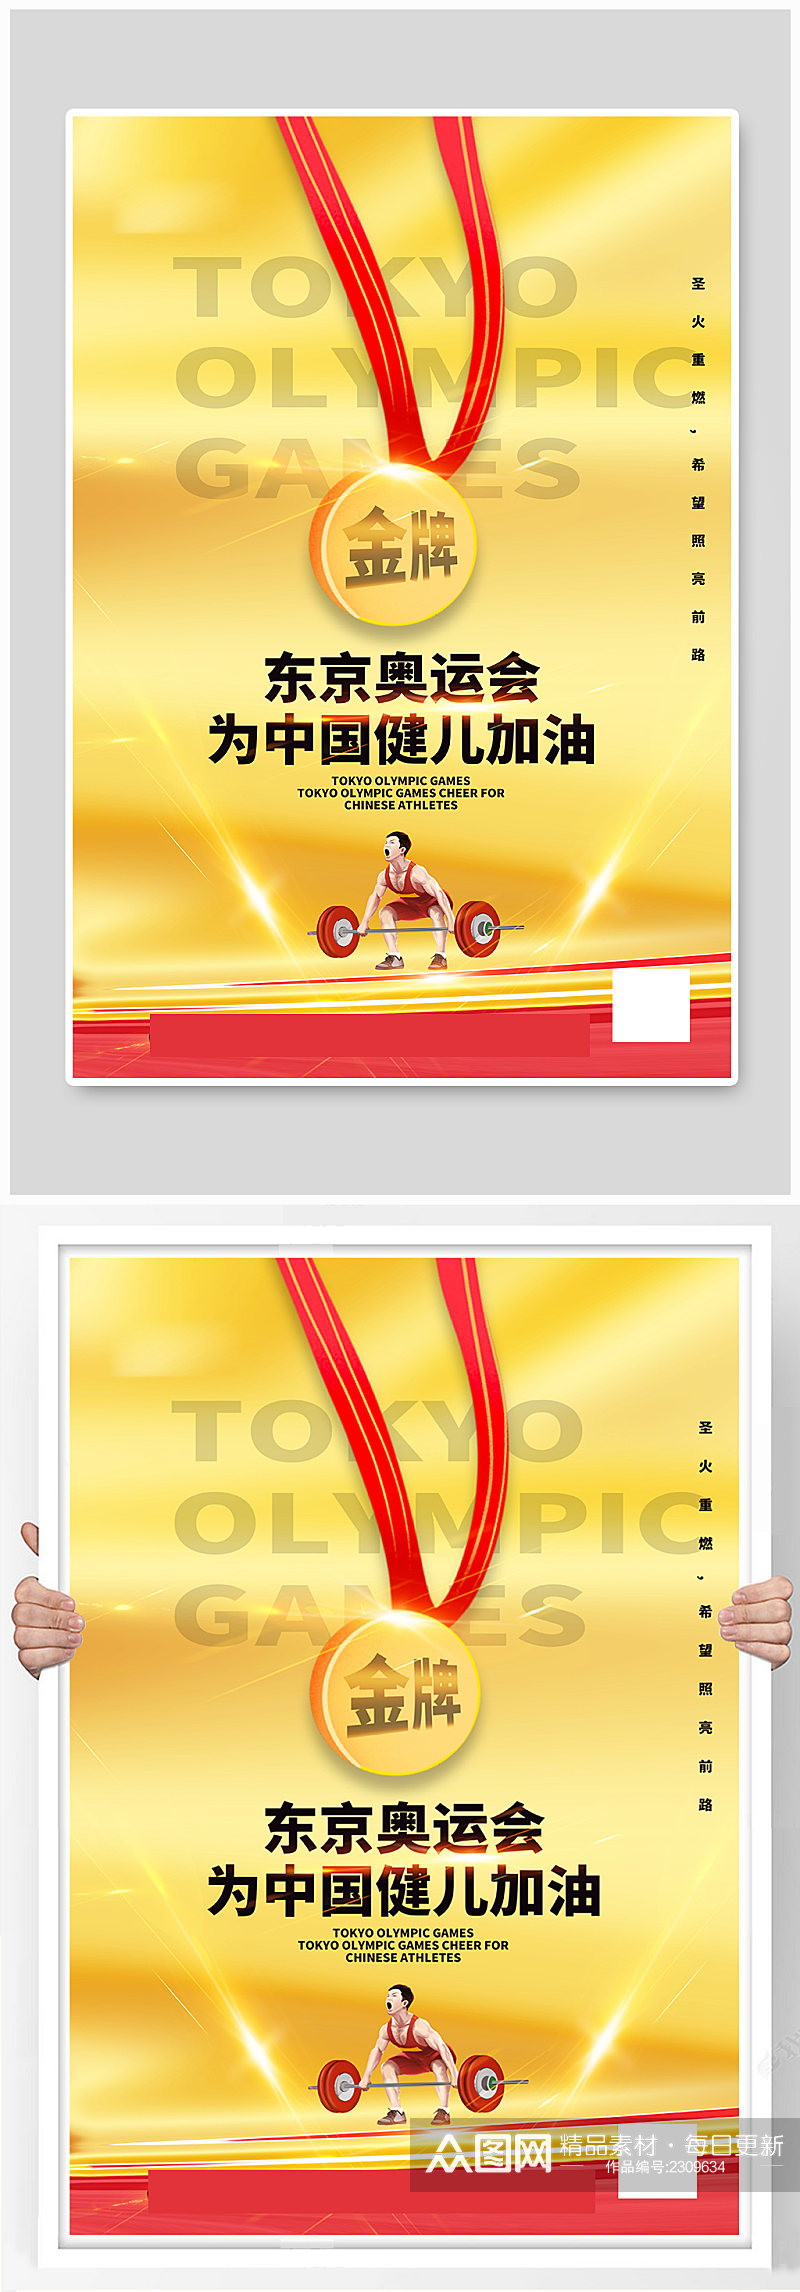 金色简洁大气奥运会中国健儿加油海报素材